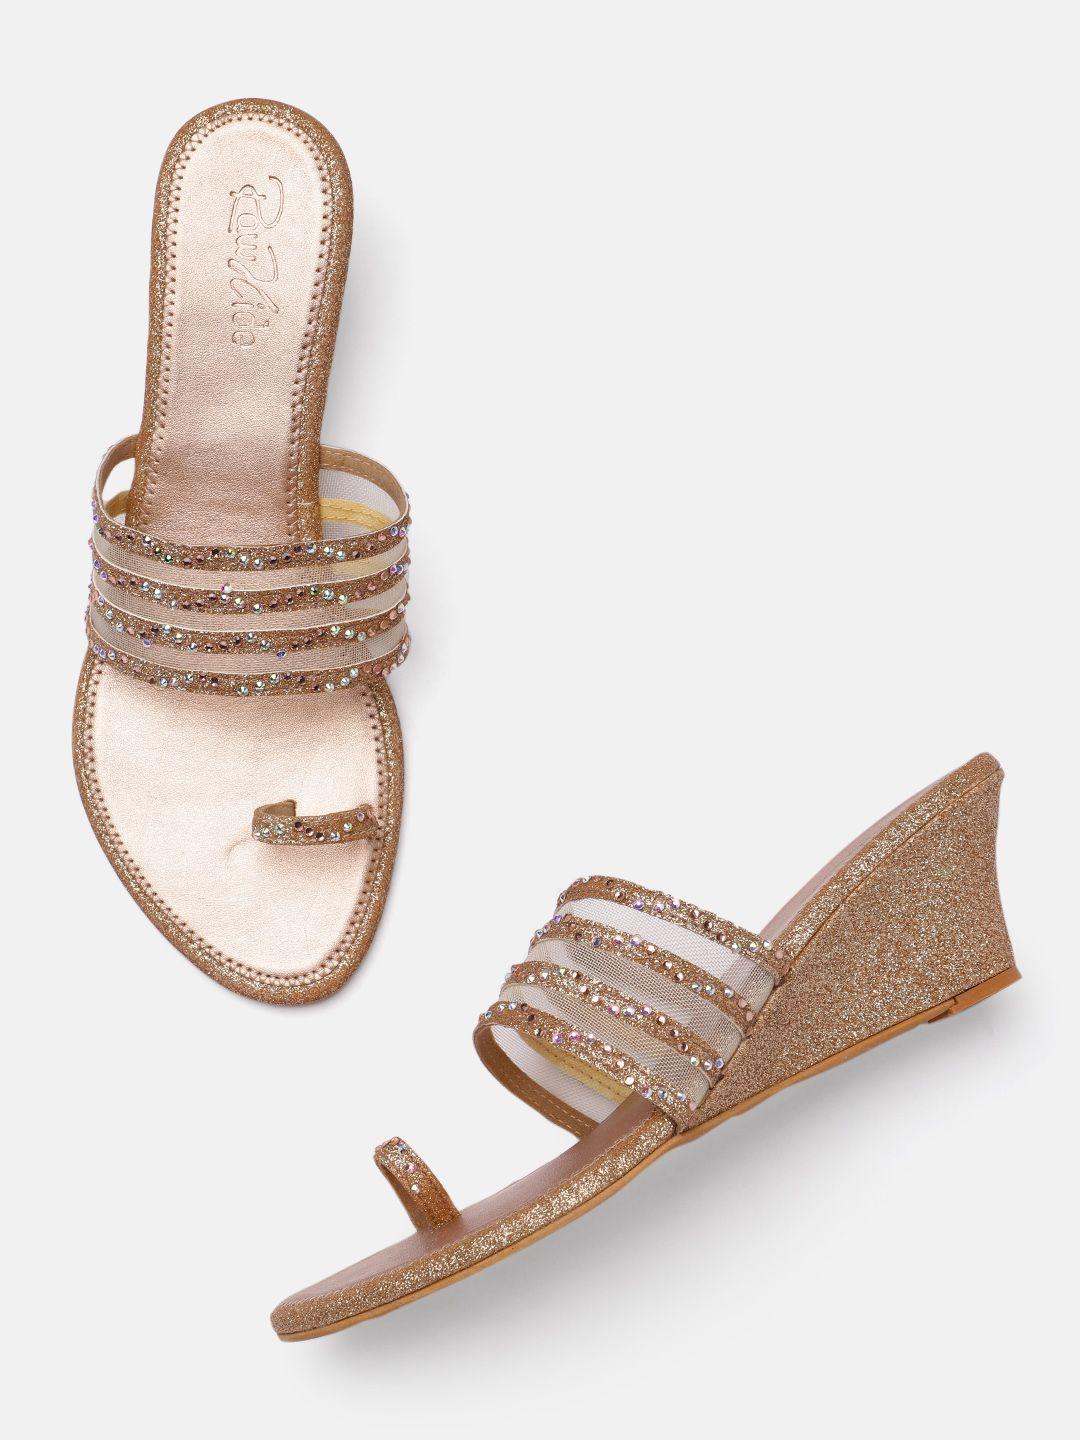 raw hide rose gold embellished wedge heels